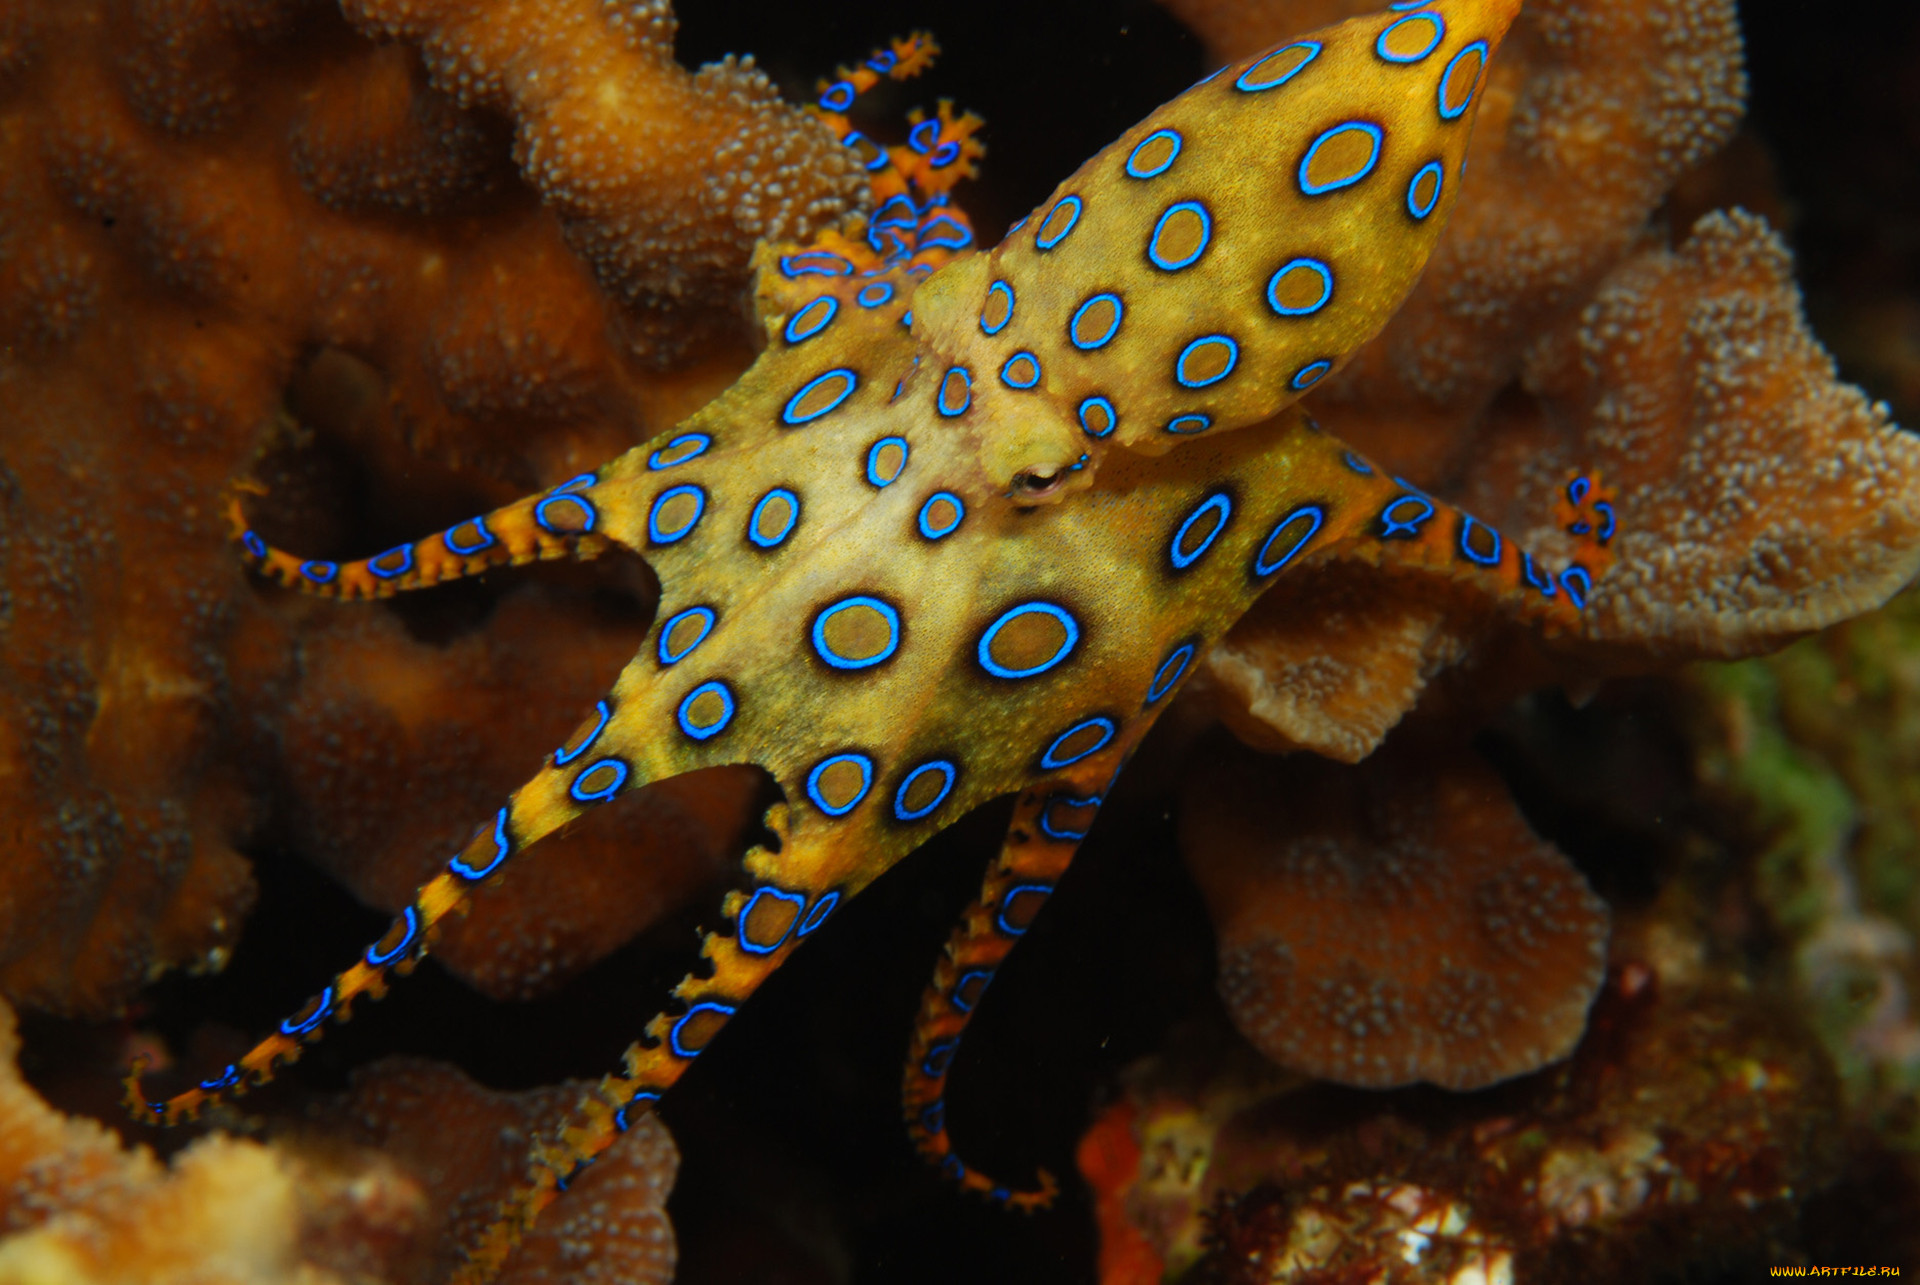 Сообщение удивительные обитатели океана. Синекольчатый осьминог. Сине кольчетый осм5ног. Синекольчатый осьминог Осьминоги. Синекольчатый осьминог Южная Америка.